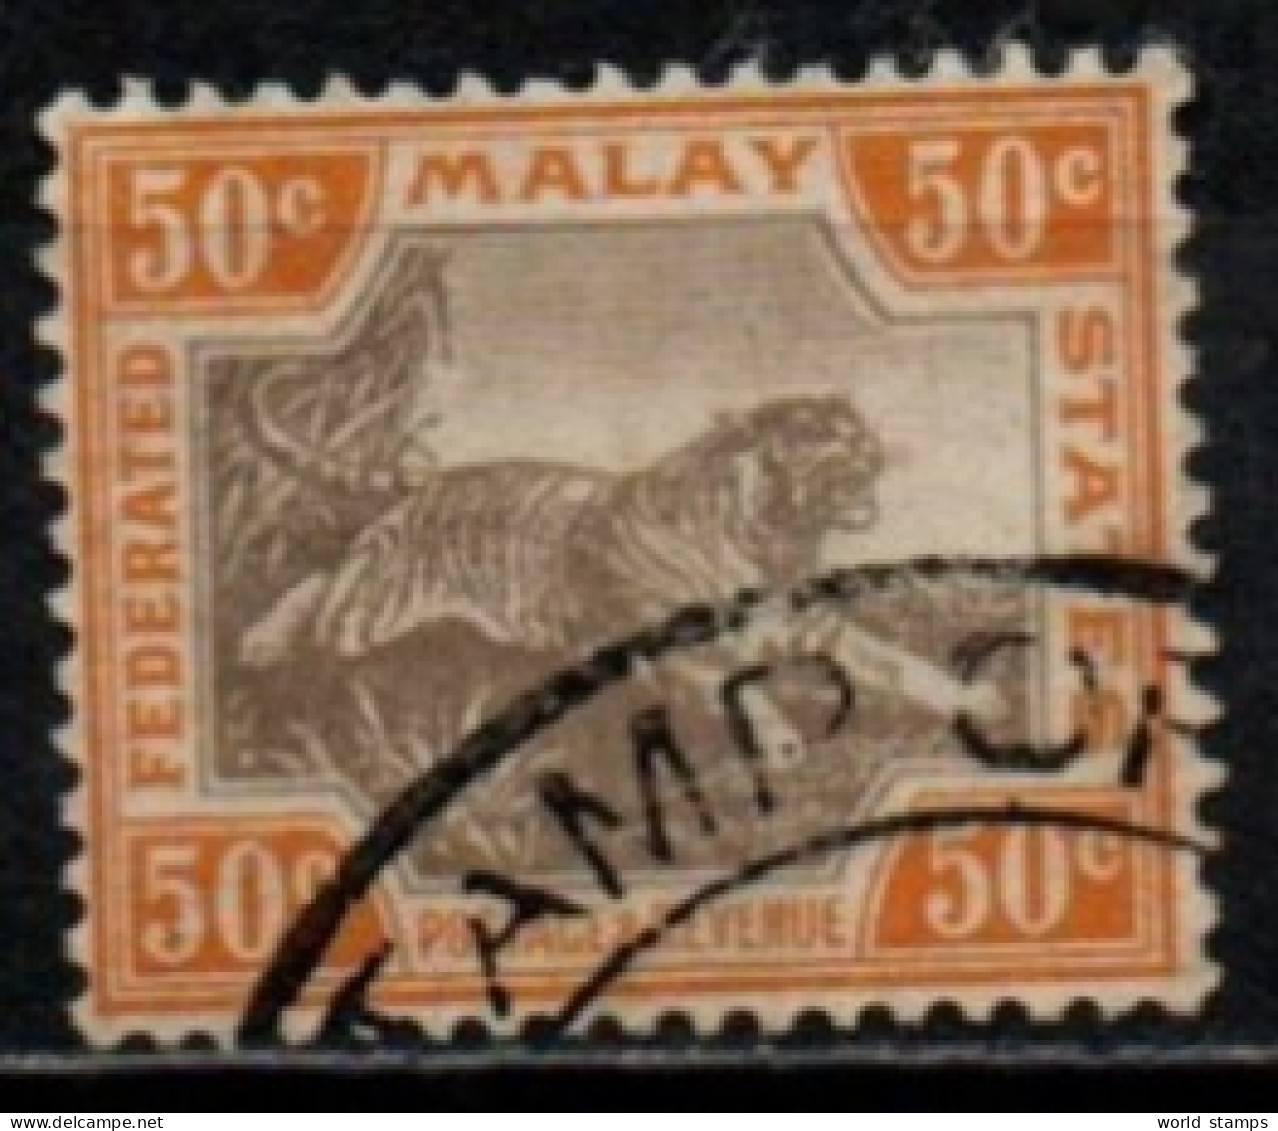 MALAYA STATES 1901 O FIL CA - Federated Malay States